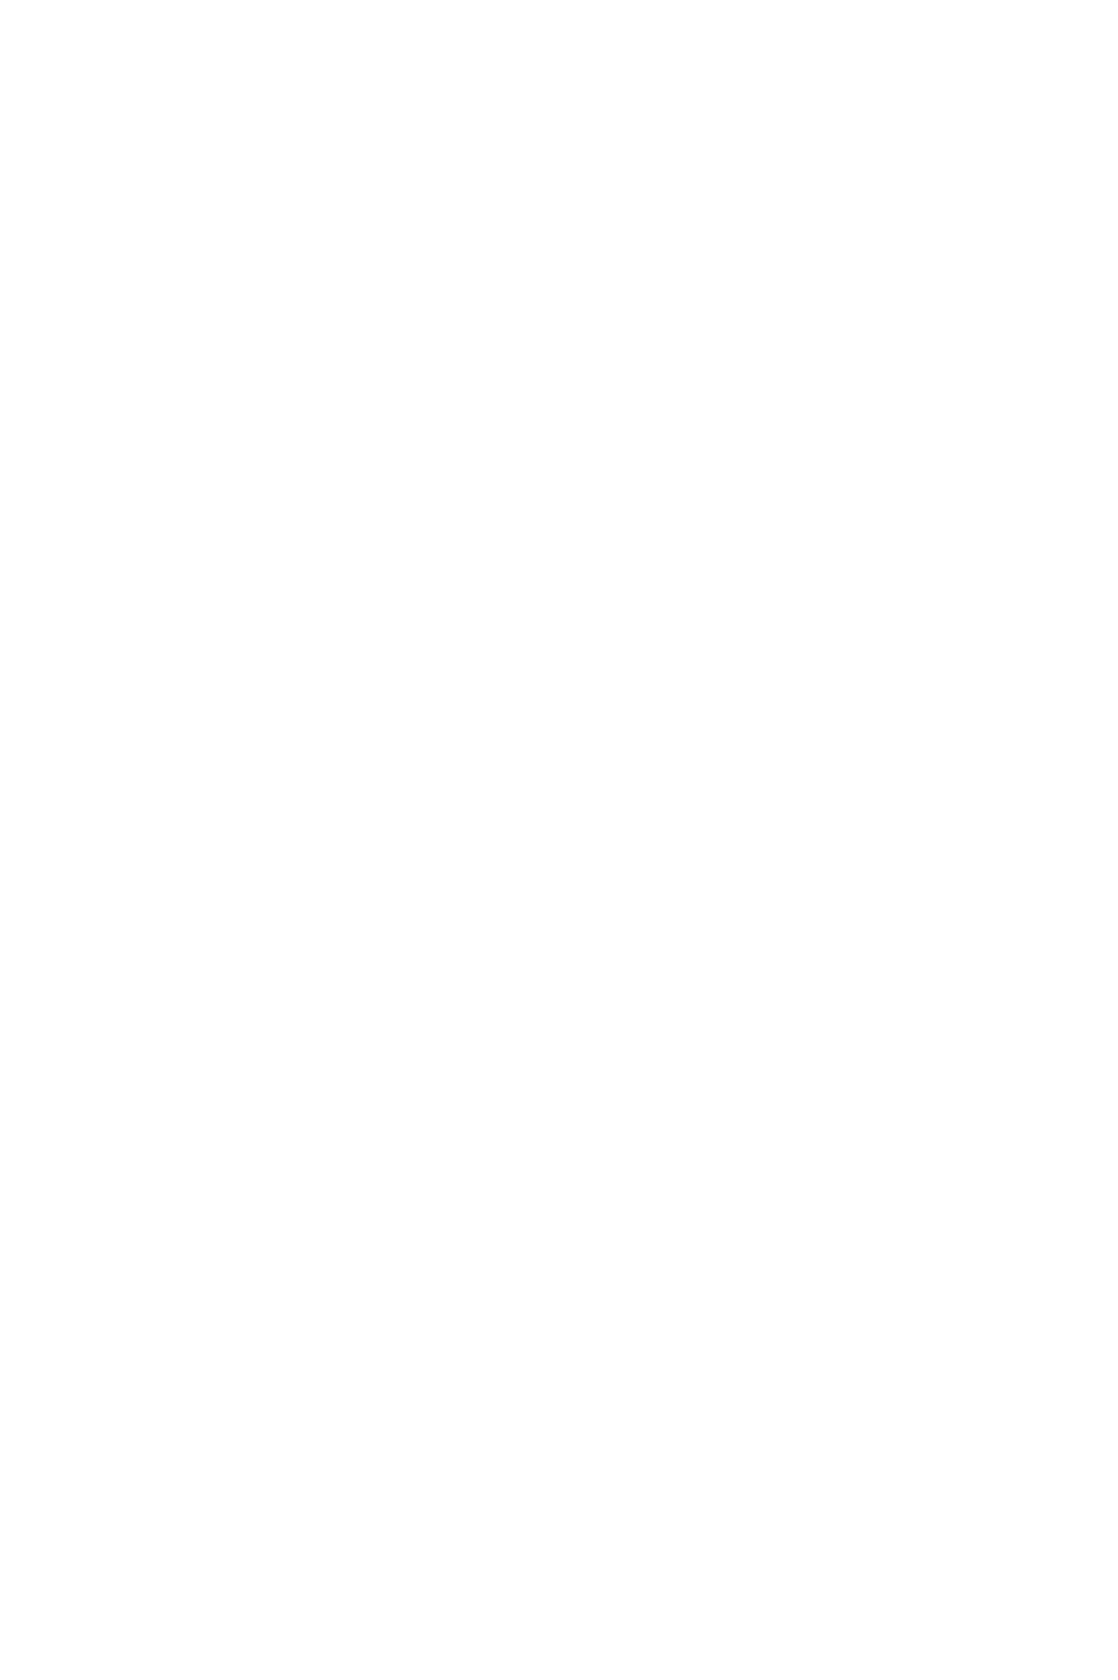 Шуба в диагональную полоску с английским воротником из искусственного меха большого размера на заказ в ателье с доставкой по России, в Казахстан и Беларусь